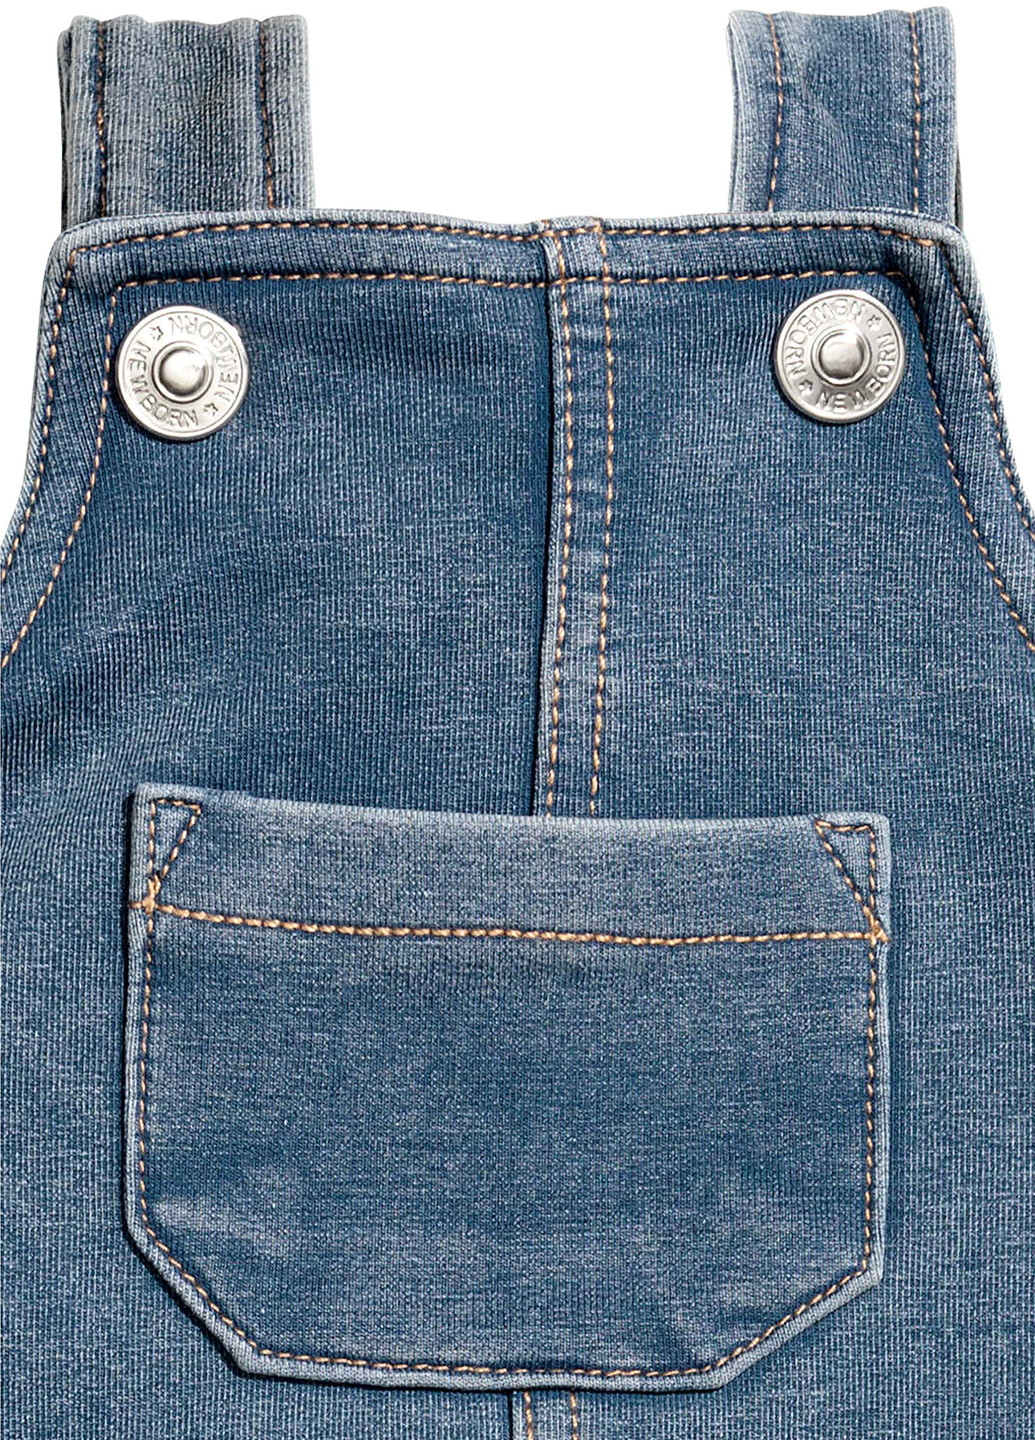 Комбинезон H&M комбинезон-брюки джинсовый кэжуал